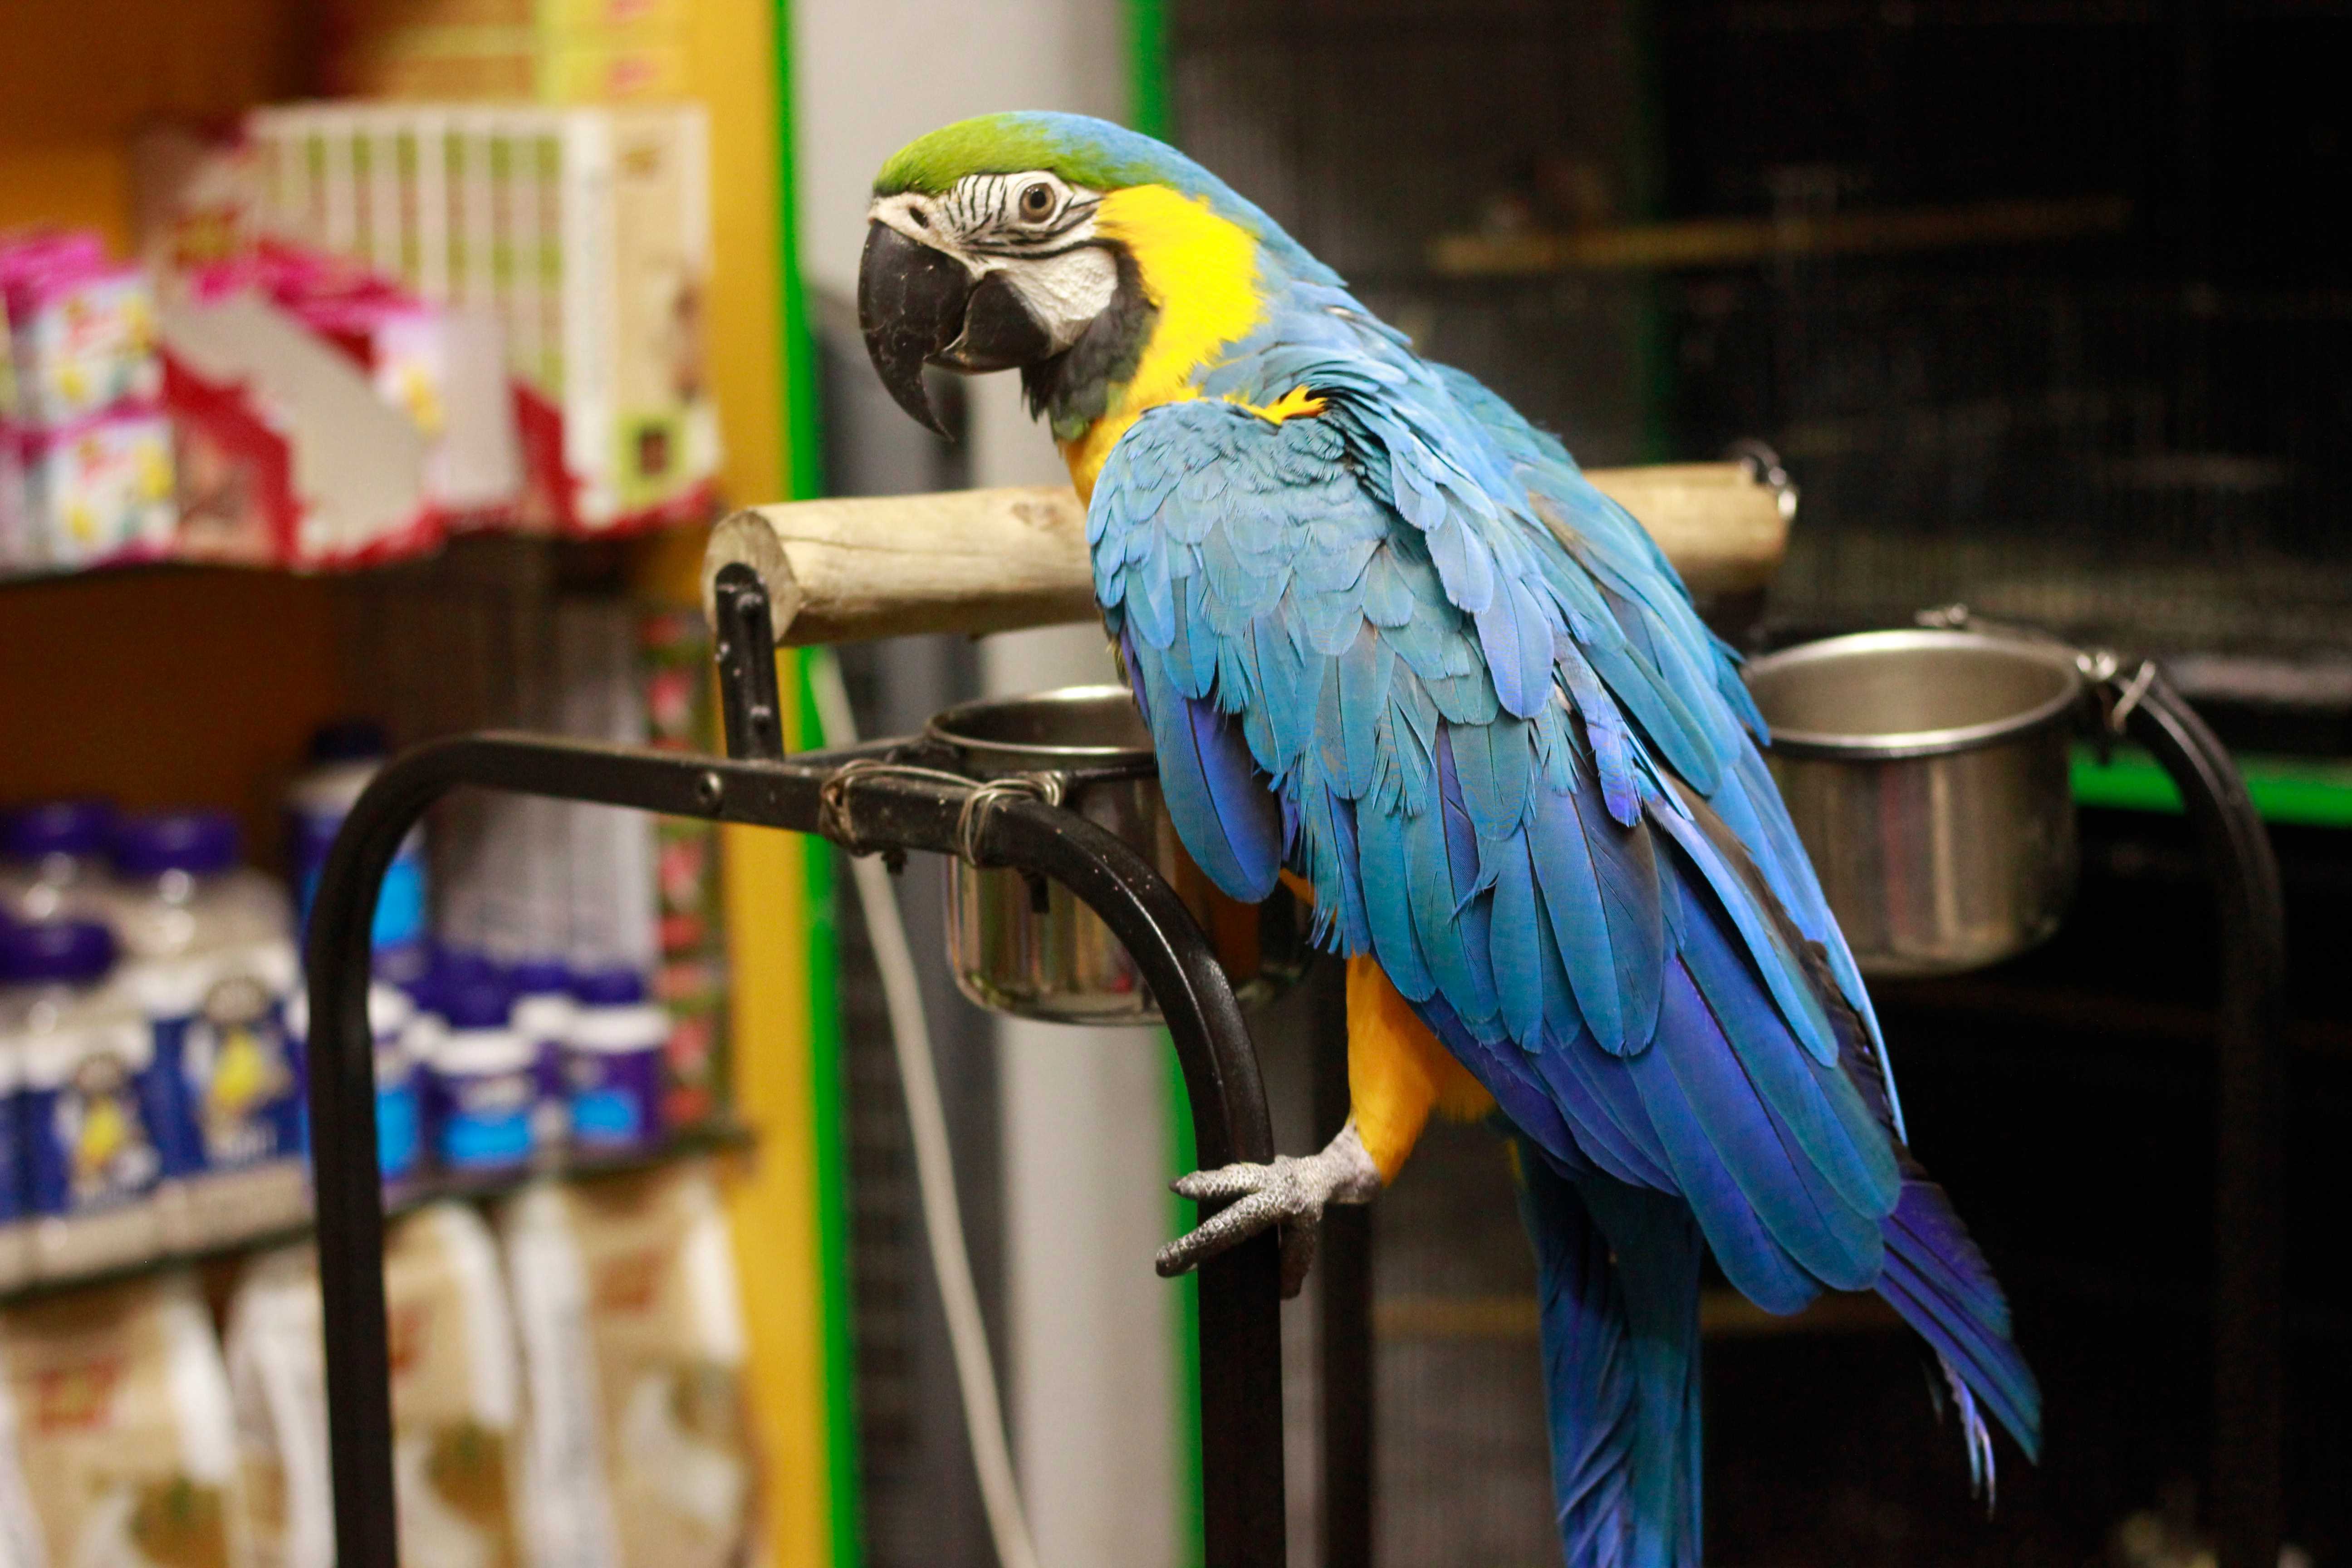 Попугай дома: плюсы и минусы содержания птицы в квартире, лучше завести волнистого или ожерелового